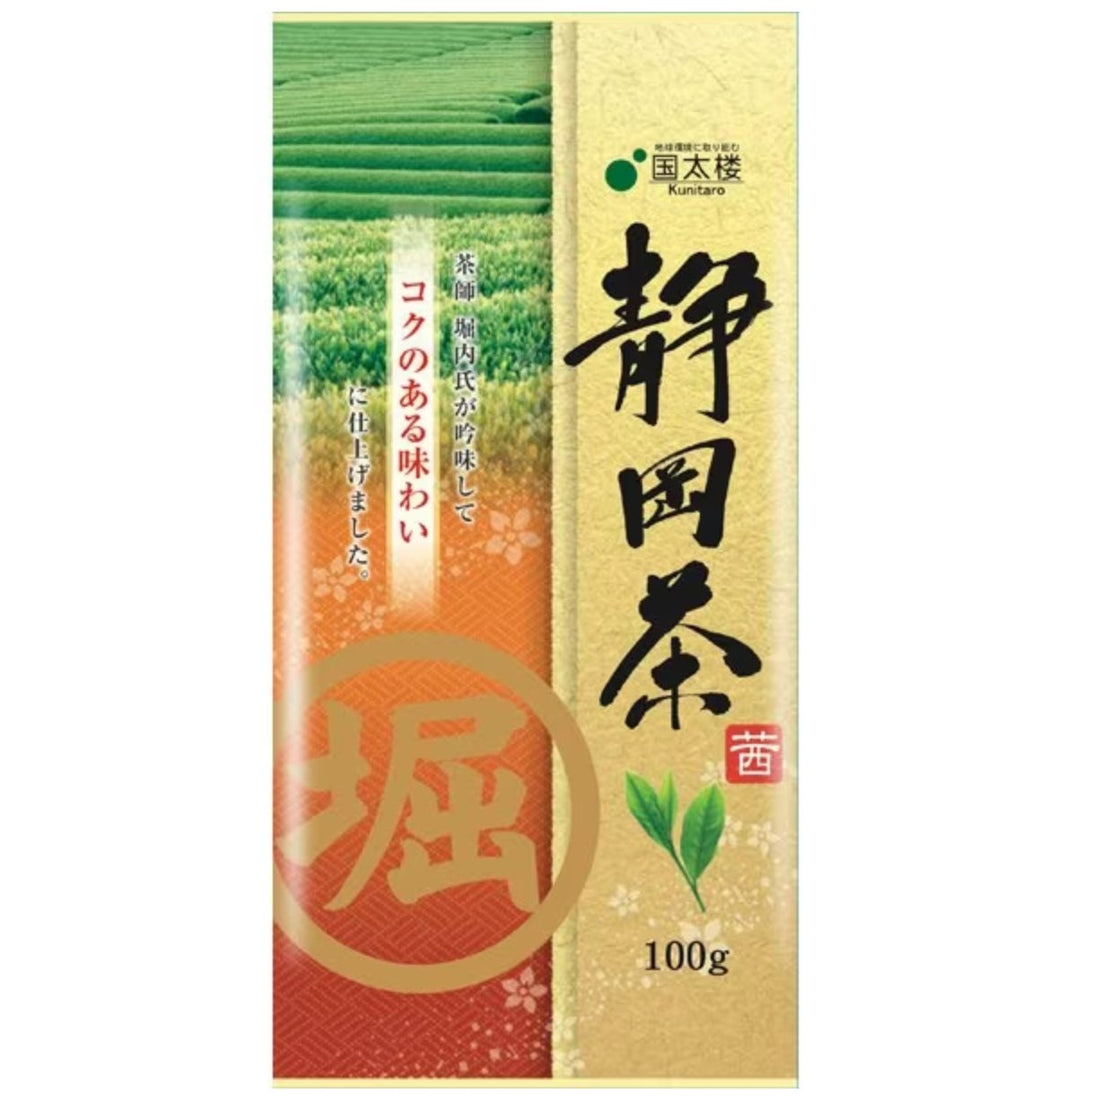 Kunitaro Marubori Shizuoka Tea Akane 100g - NihonMura